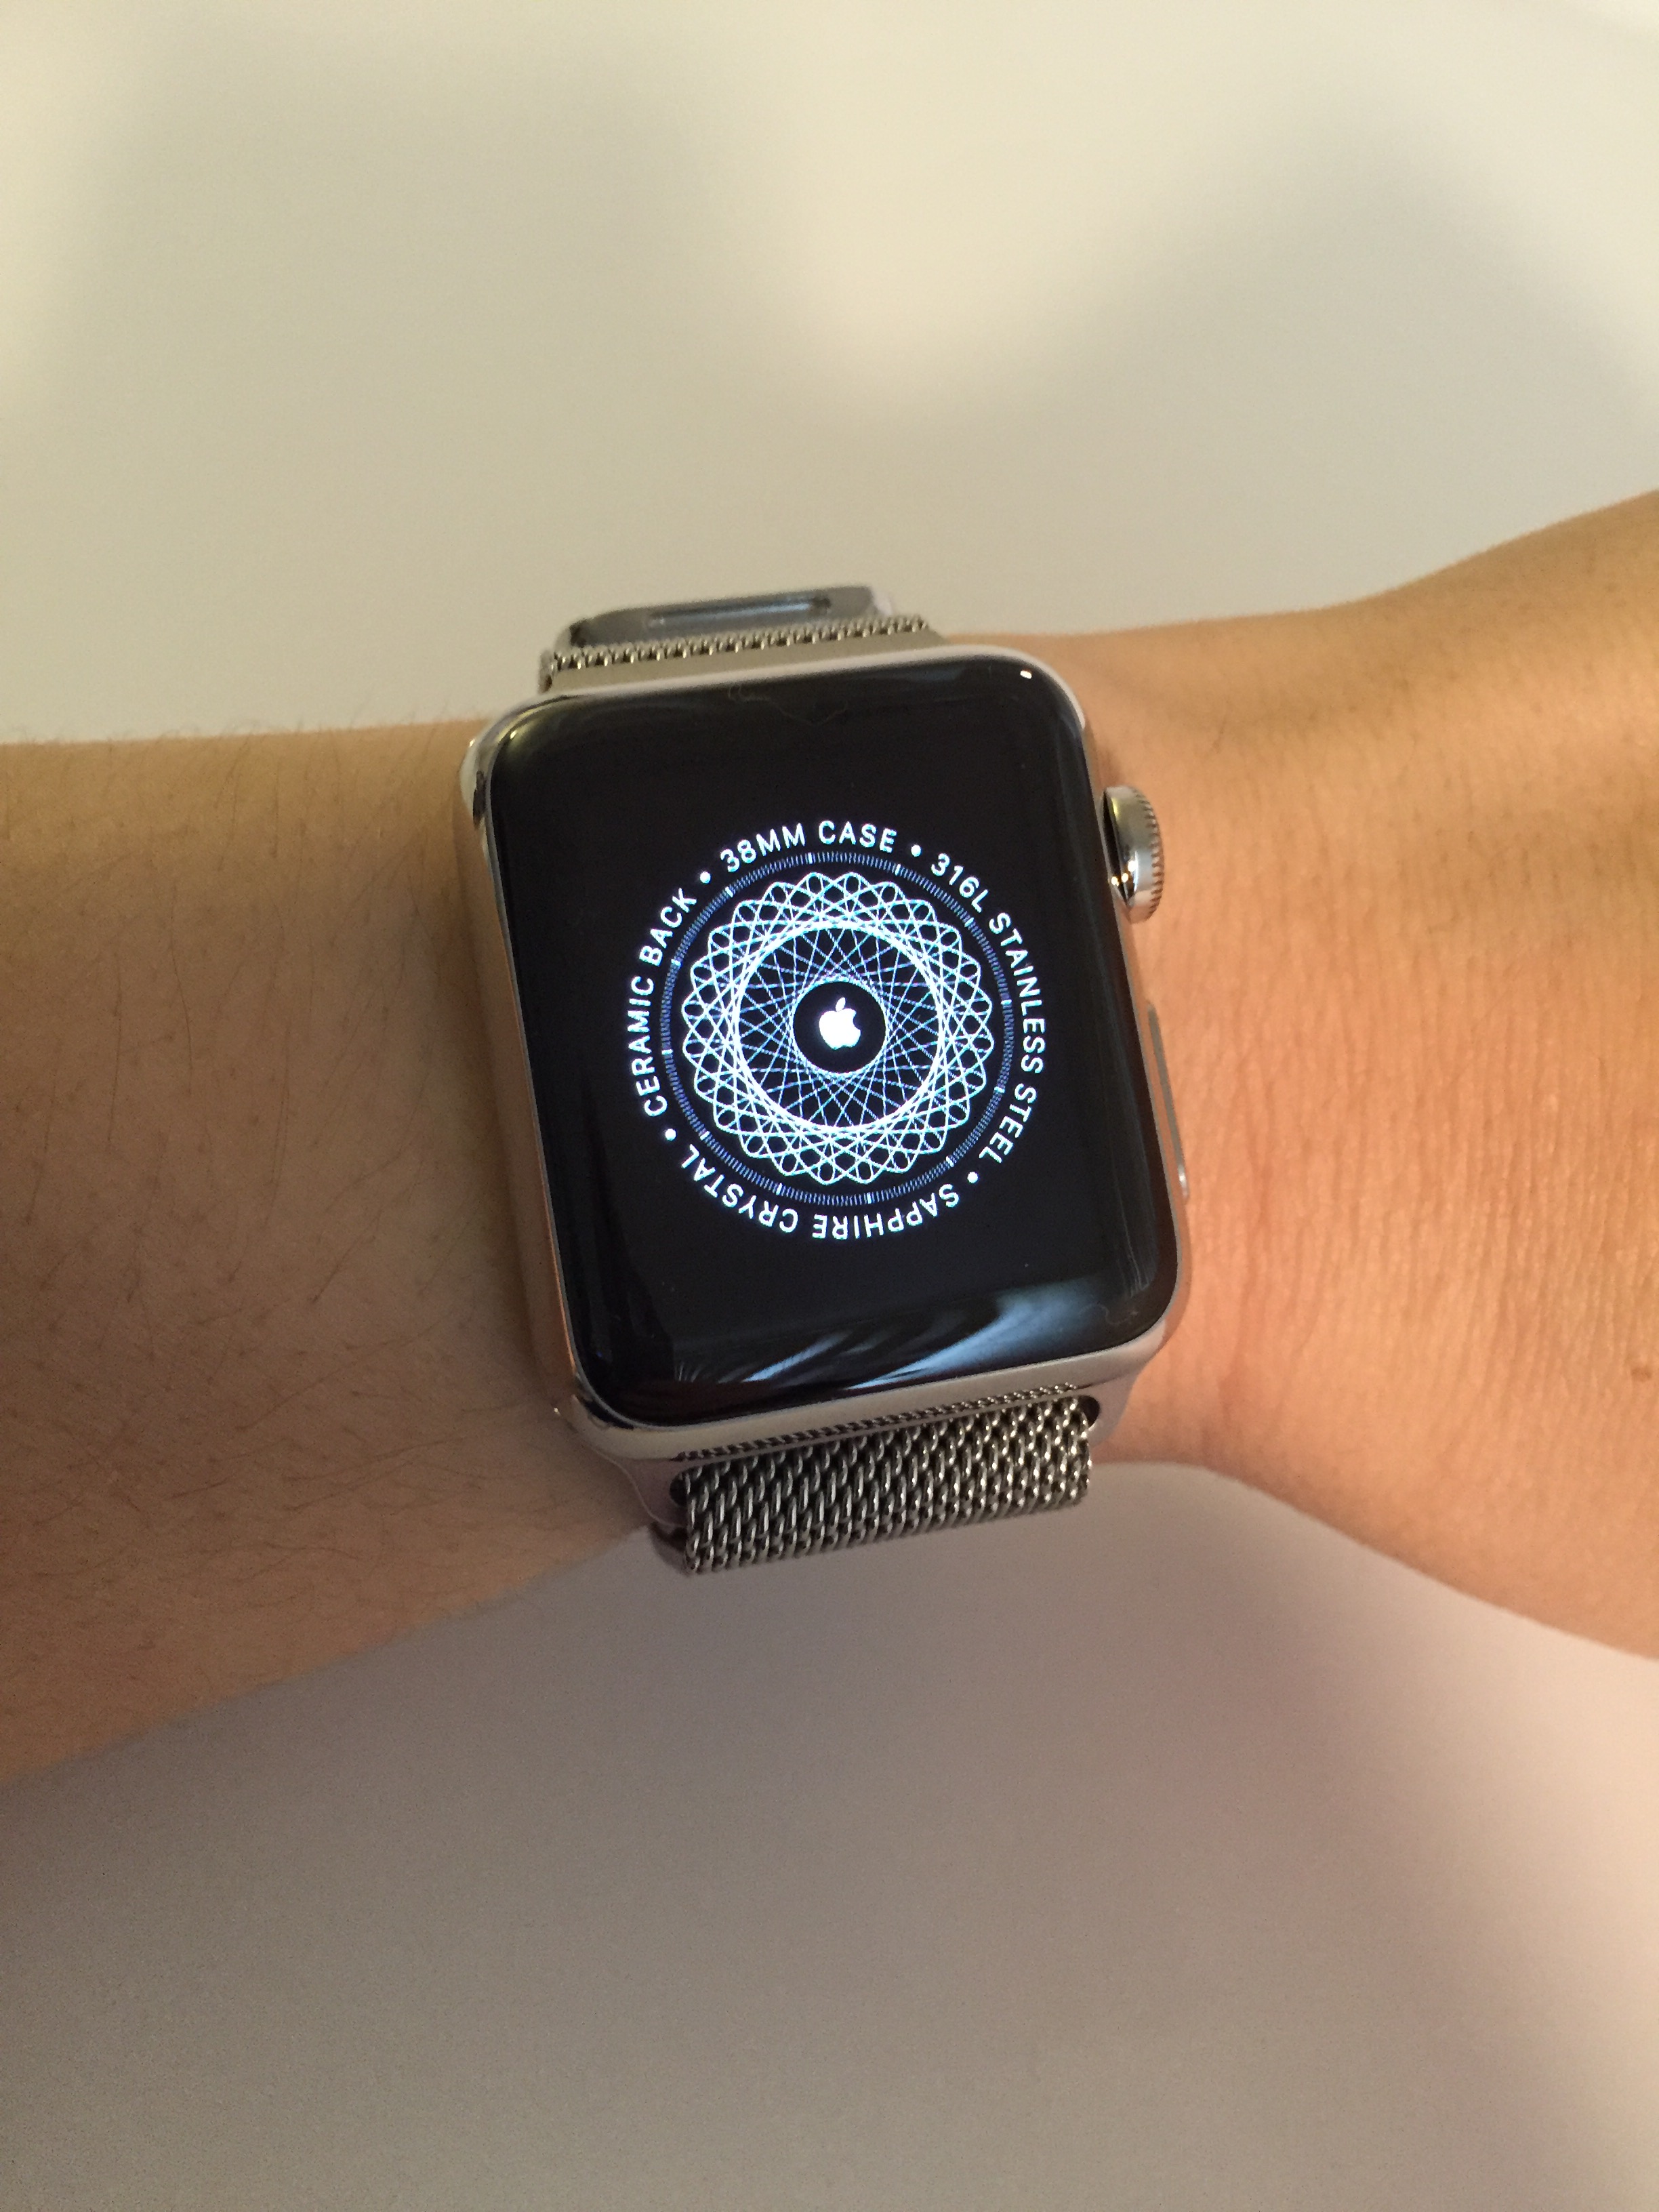 Как синхронизировать apple watch. Синхронизация эпл вотч. Режим ходьбы Apple watch. Pair Apple watch manually IPAD. Почему фото не синхронизируются на Apple watch.